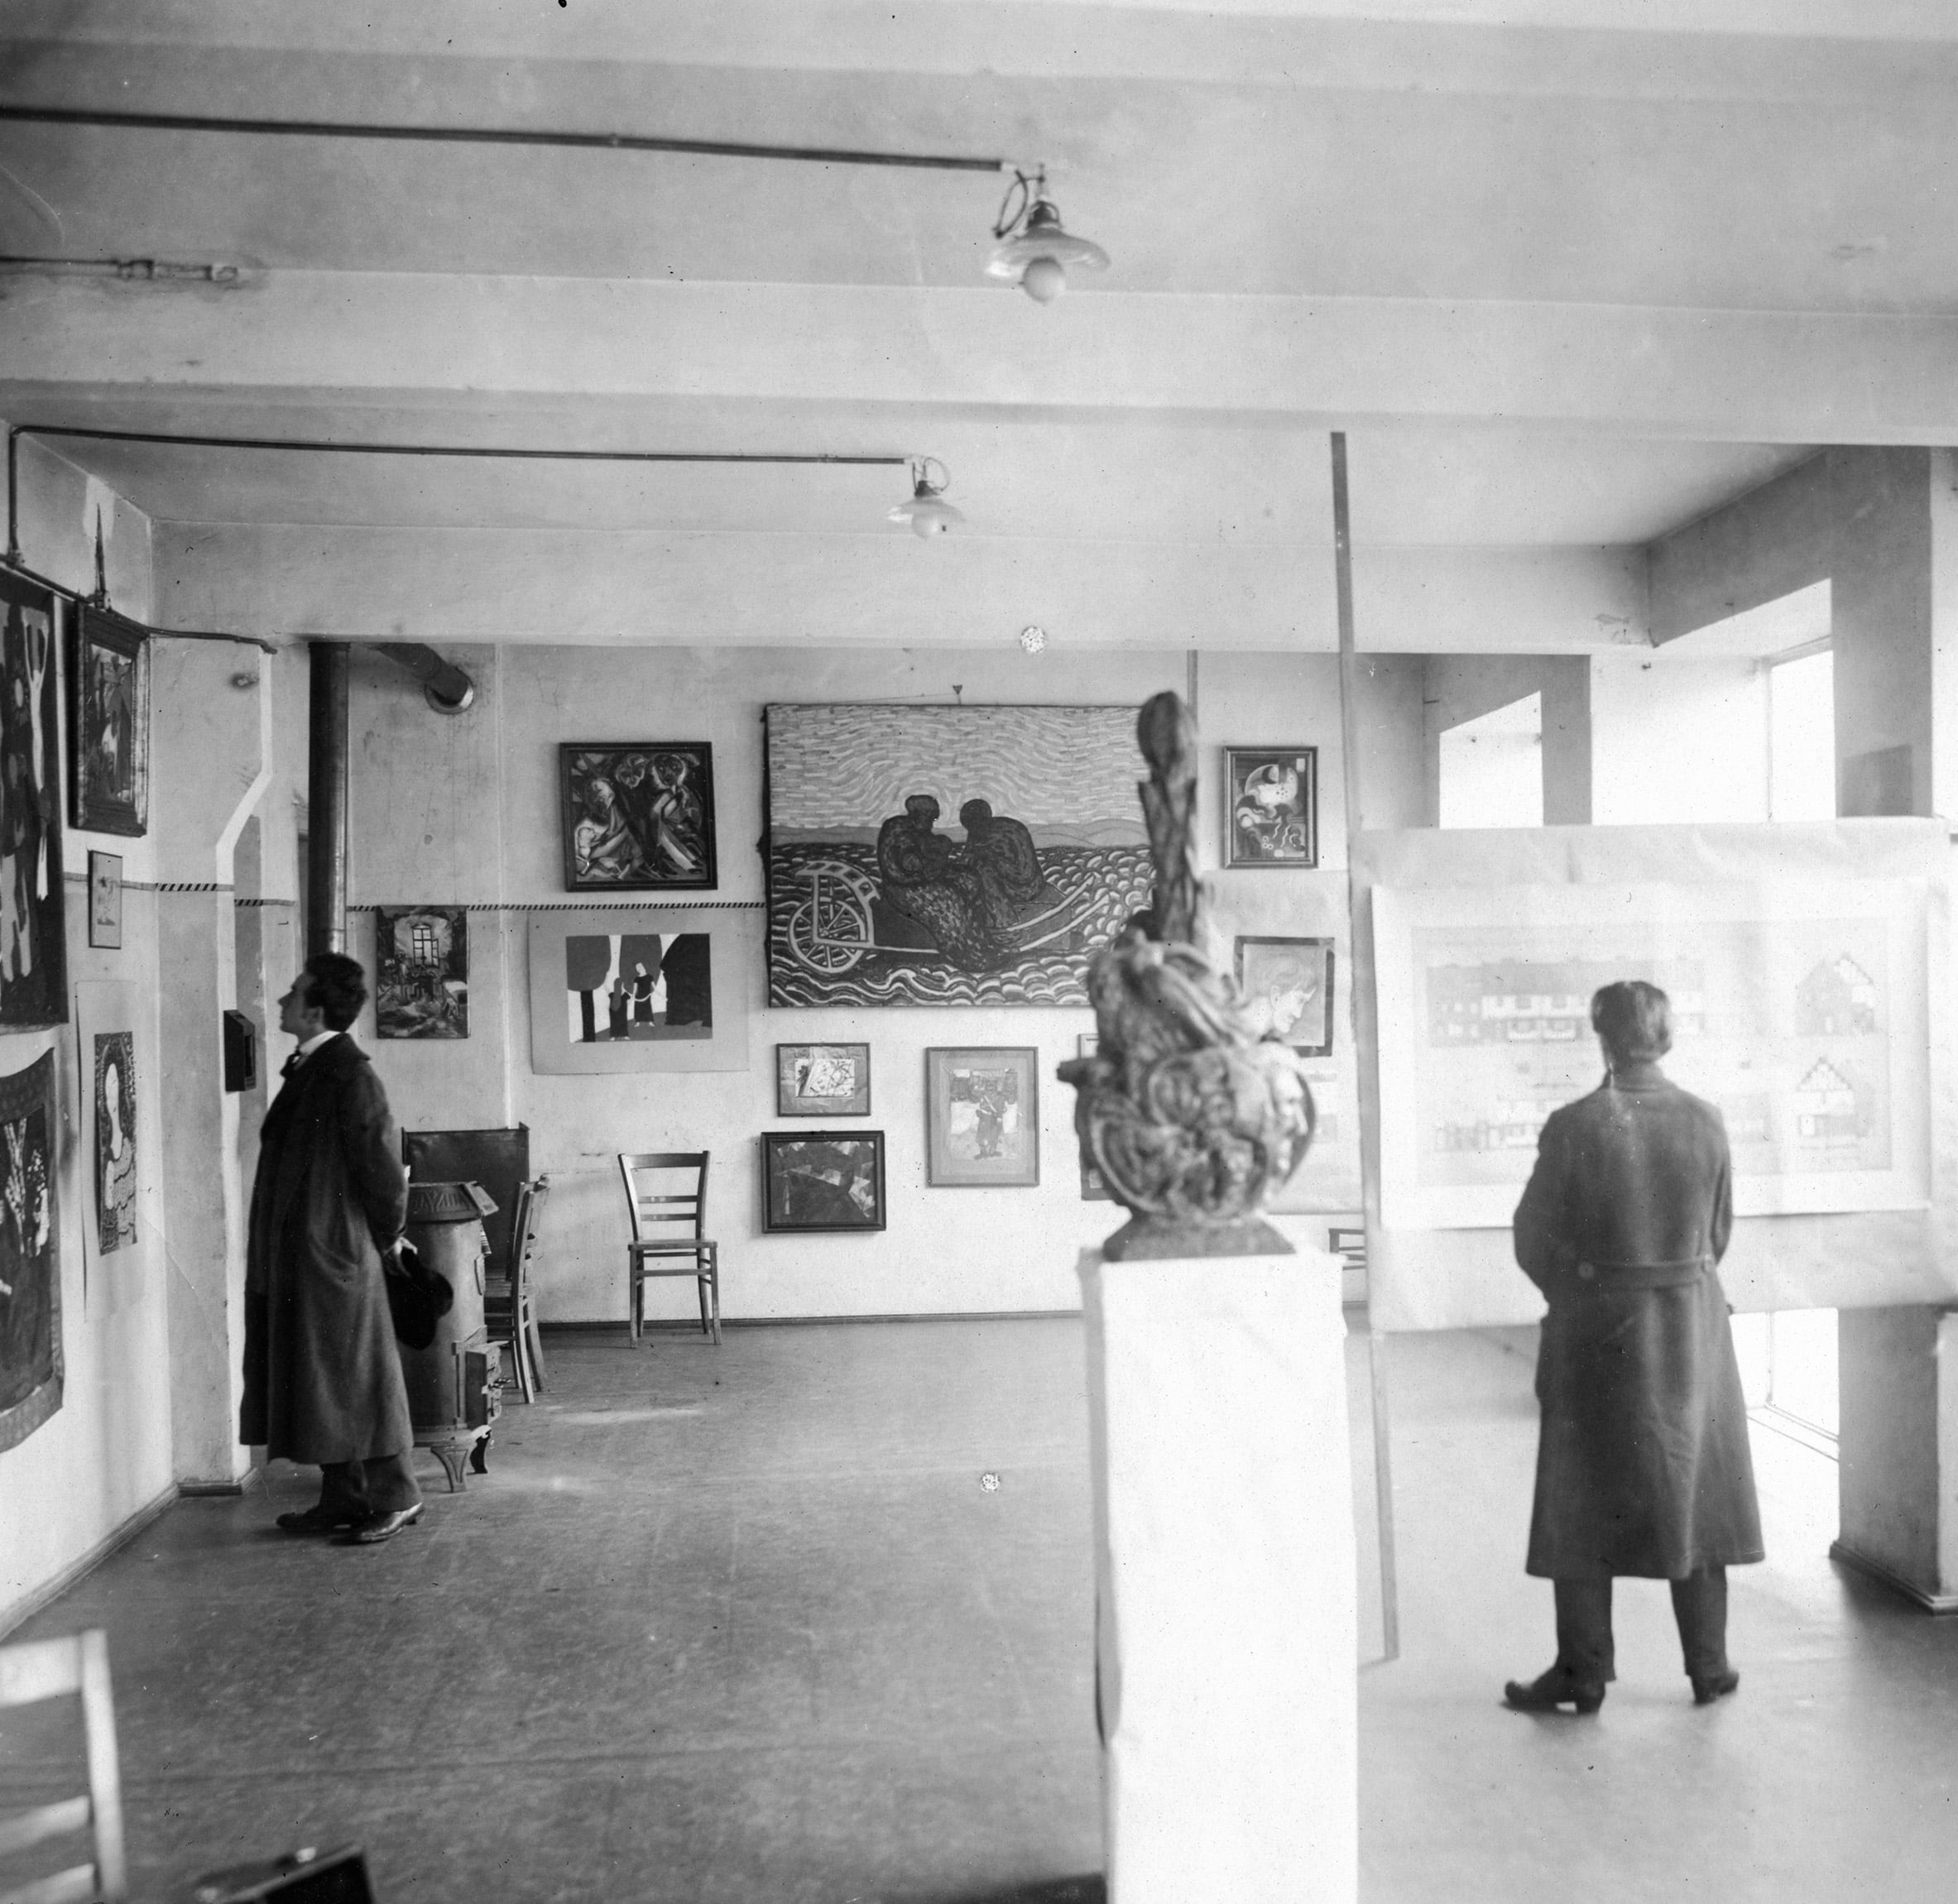 Ein altes Foto: ein Ausstellungsraum voller Bilder und einer Installation. 2 Personen stehen im Raum und schauen sich Bilder an. Die beiden Personen haben beide lange Jacken an und stehen weit voneinander entfernt.